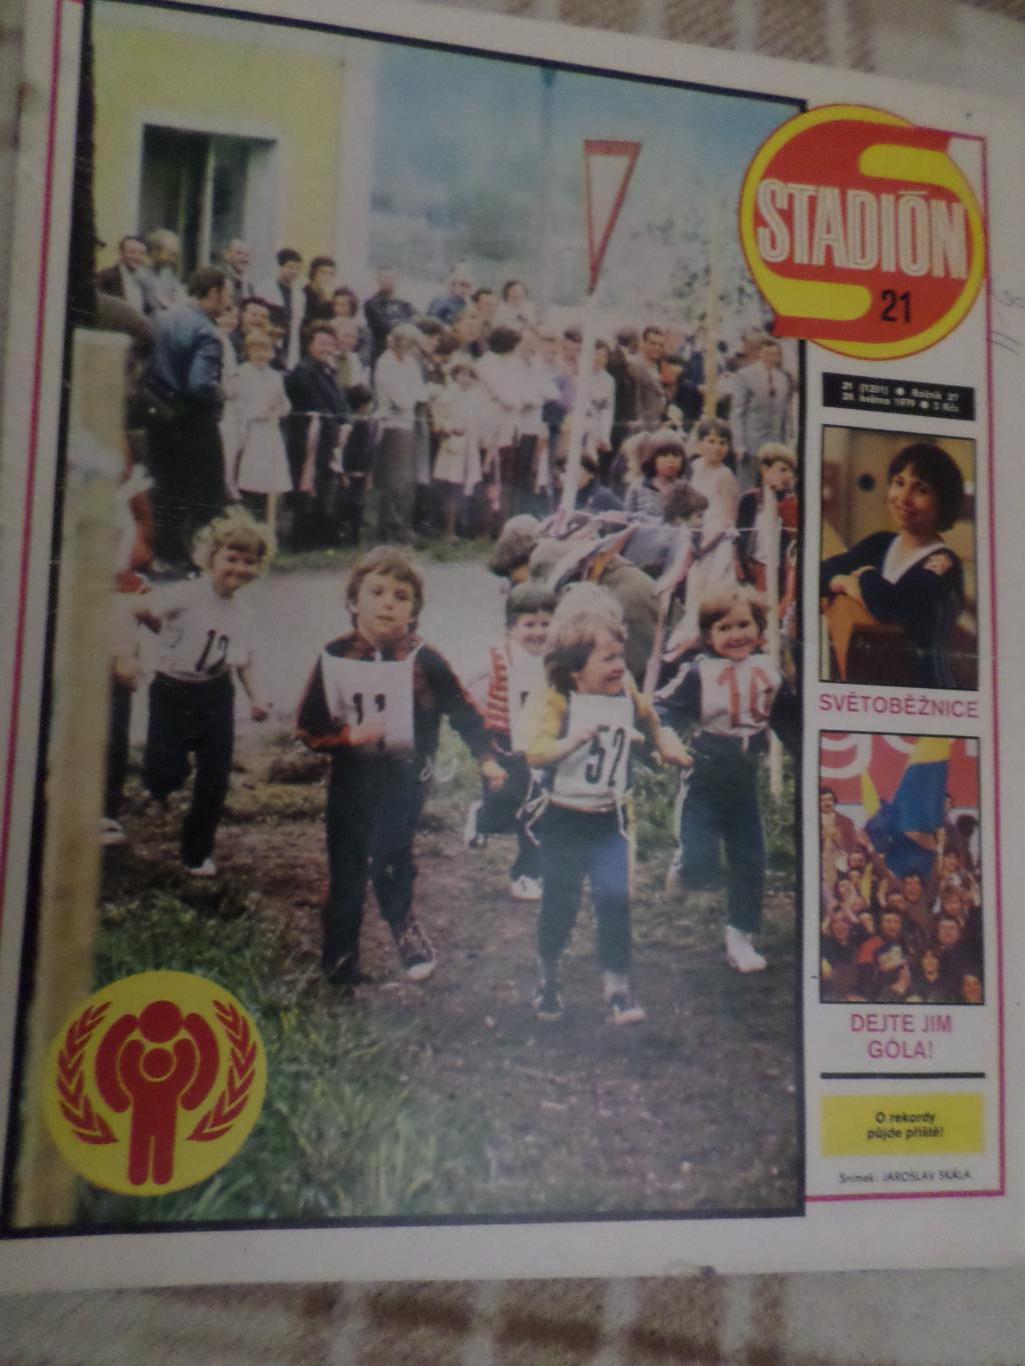 журнал Стадион Чехословакия № 21 1979 г постер Тоттенхэм